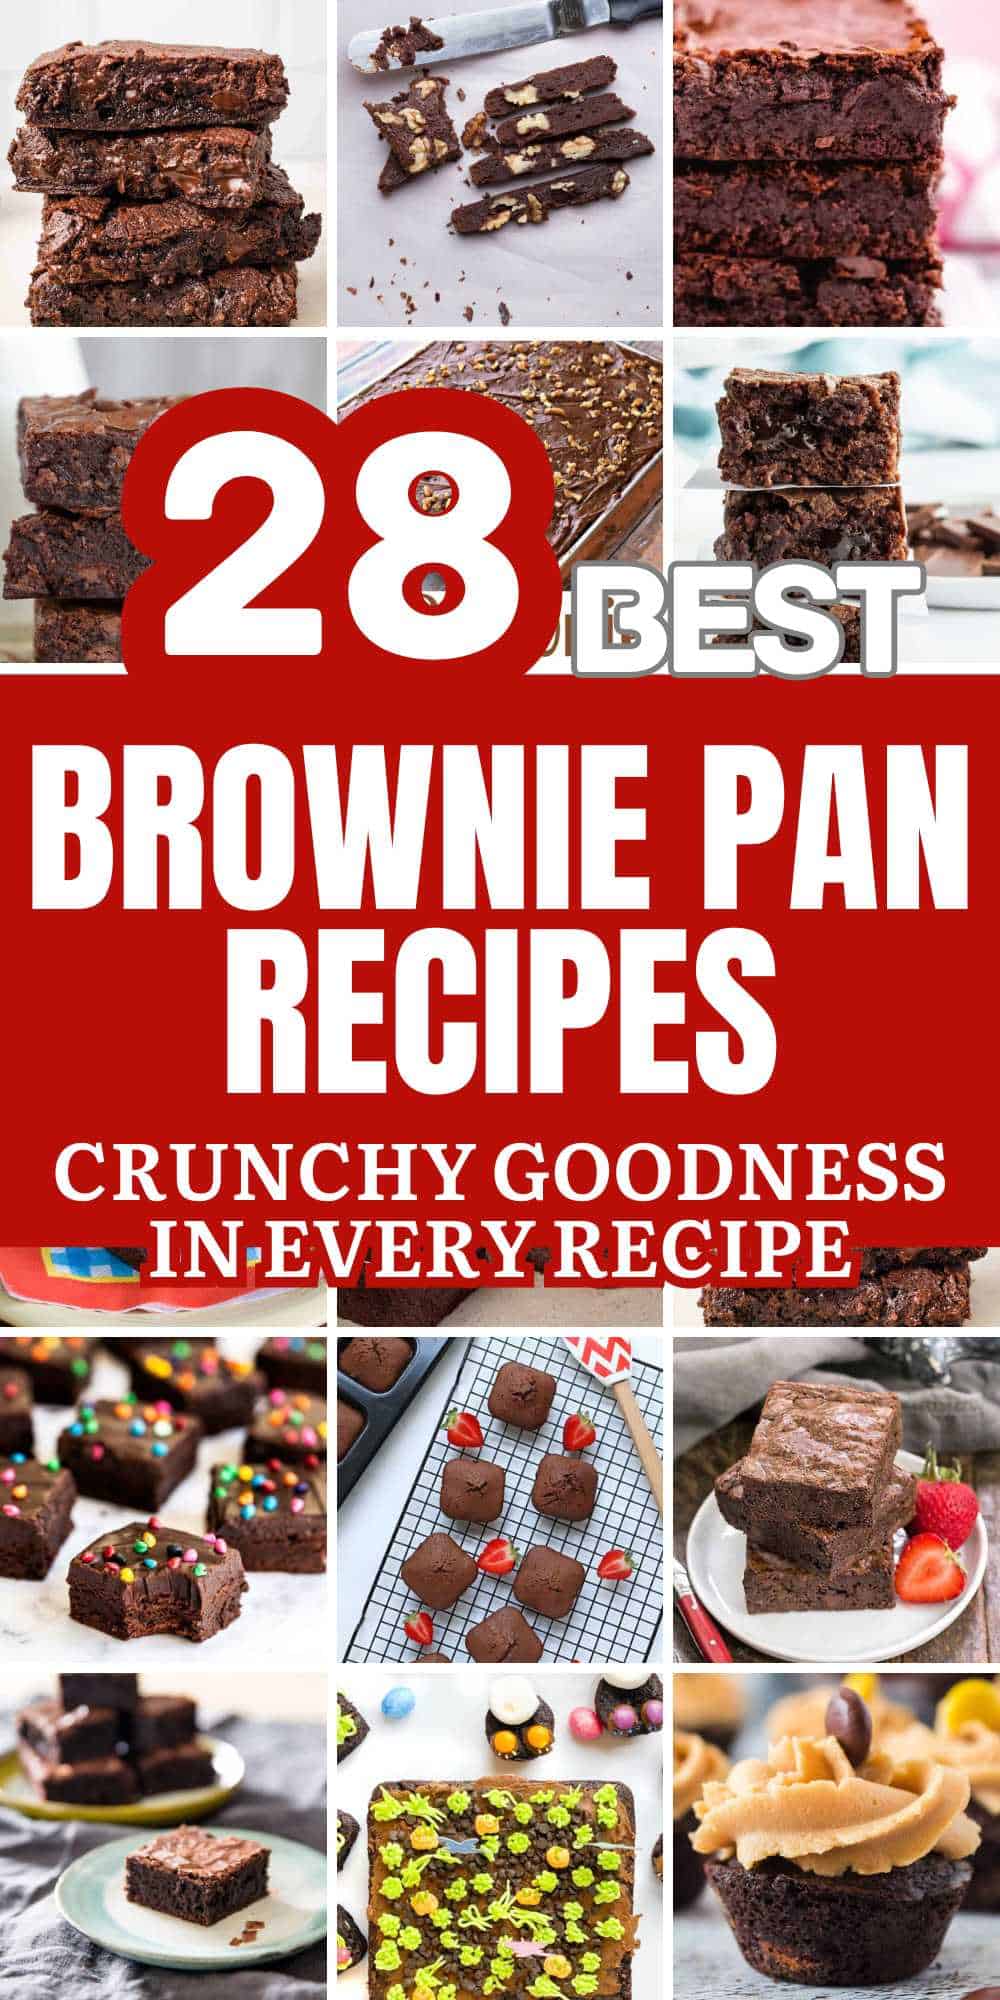 Best Brownie Pan Recipes